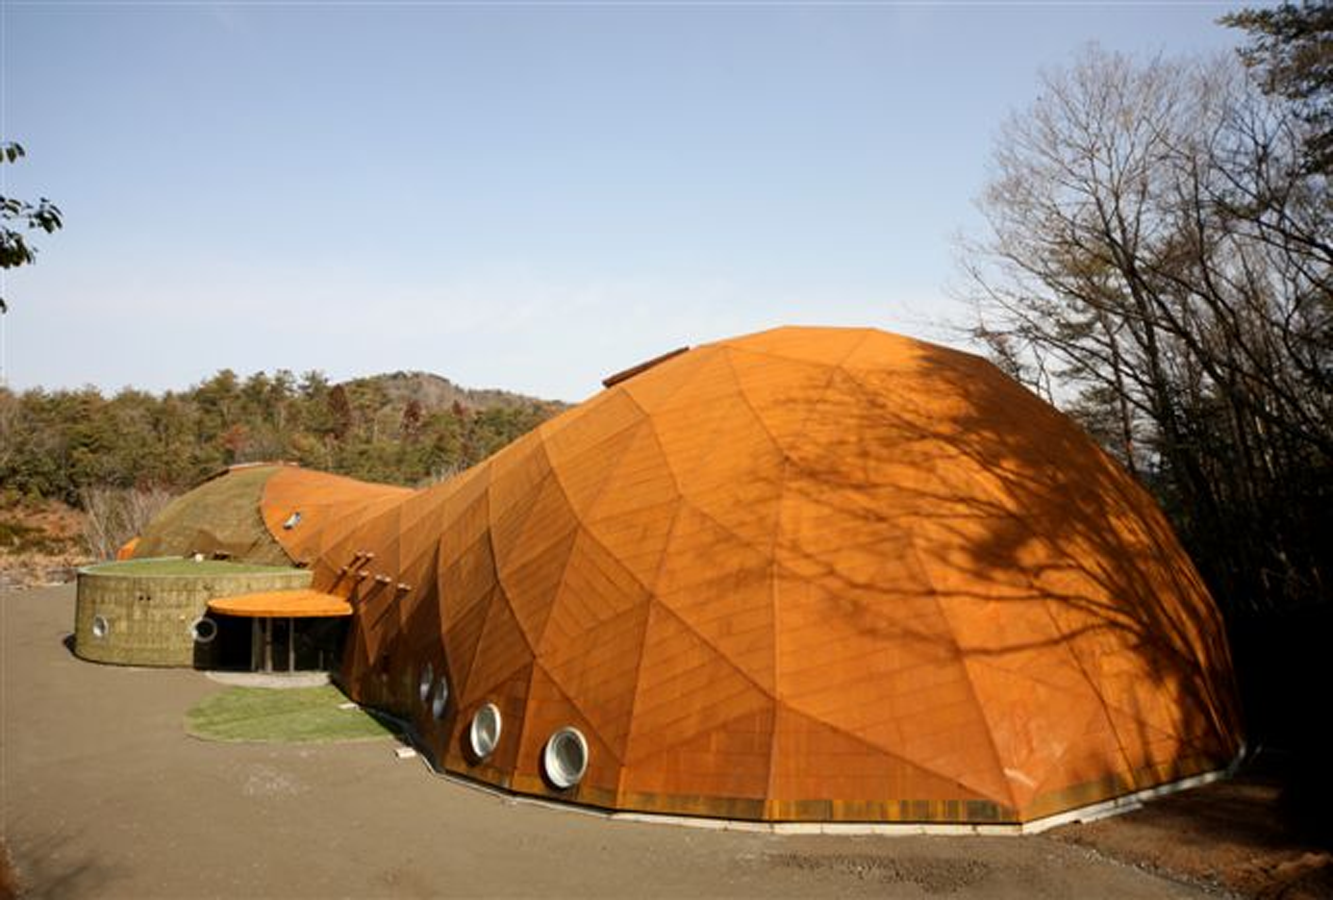 Hyogo Environmental Experience Center